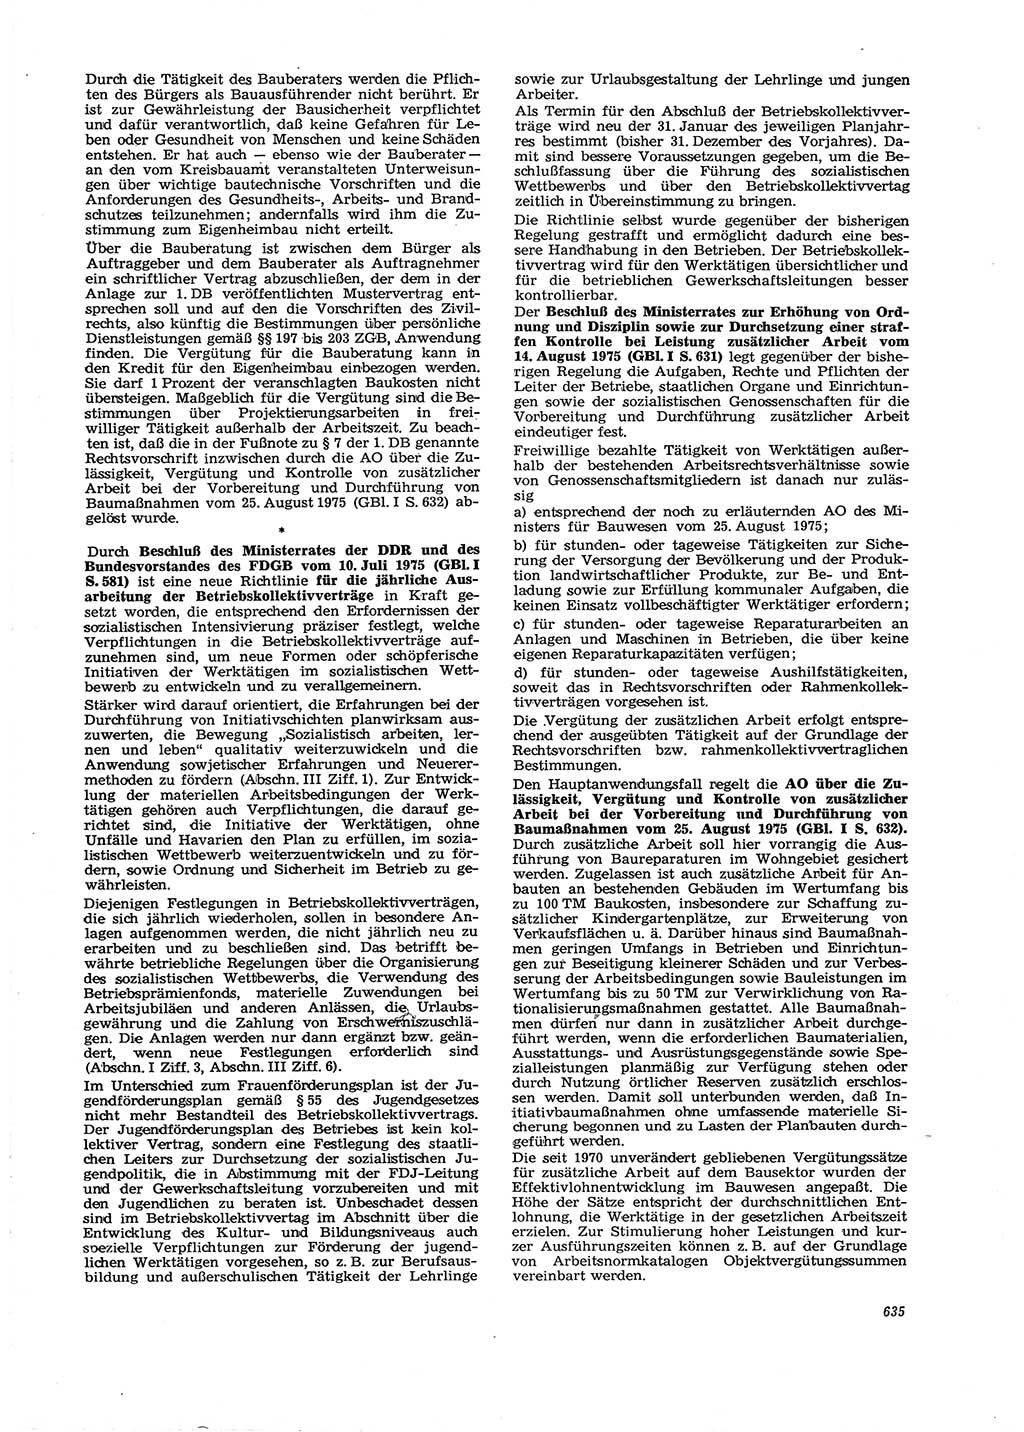 Neue Justiz (NJ), Zeitschrift für Recht und Rechtswissenschaft [Deutsche Demokratische Republik (DDR)], 29. Jahrgang 1975, Seite 635 (NJ DDR 1975, S. 635)